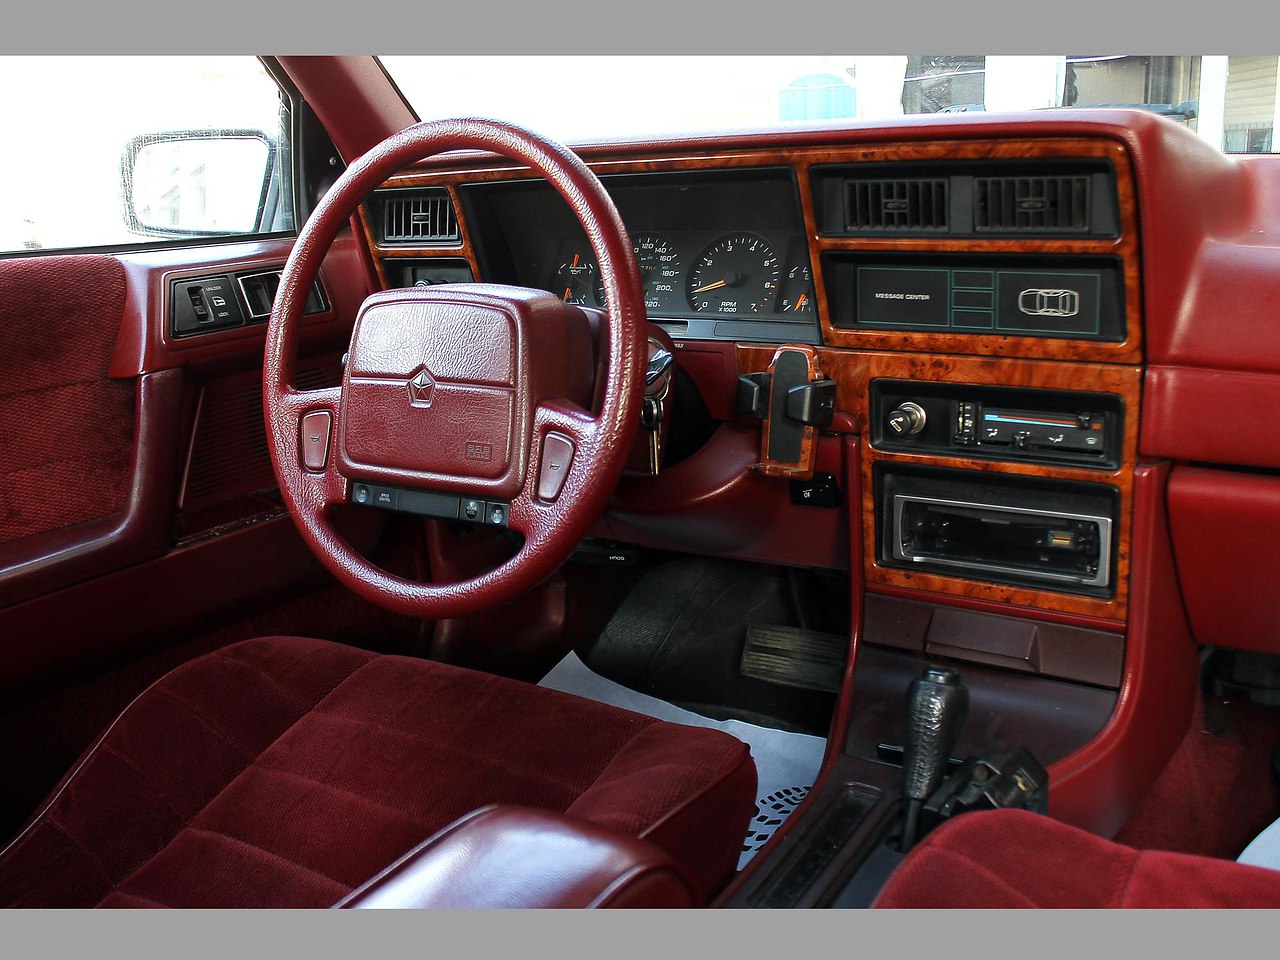 Chrysler Saratoga '1993 - Автомобильные Обьявления, № 926631420 Фотост...